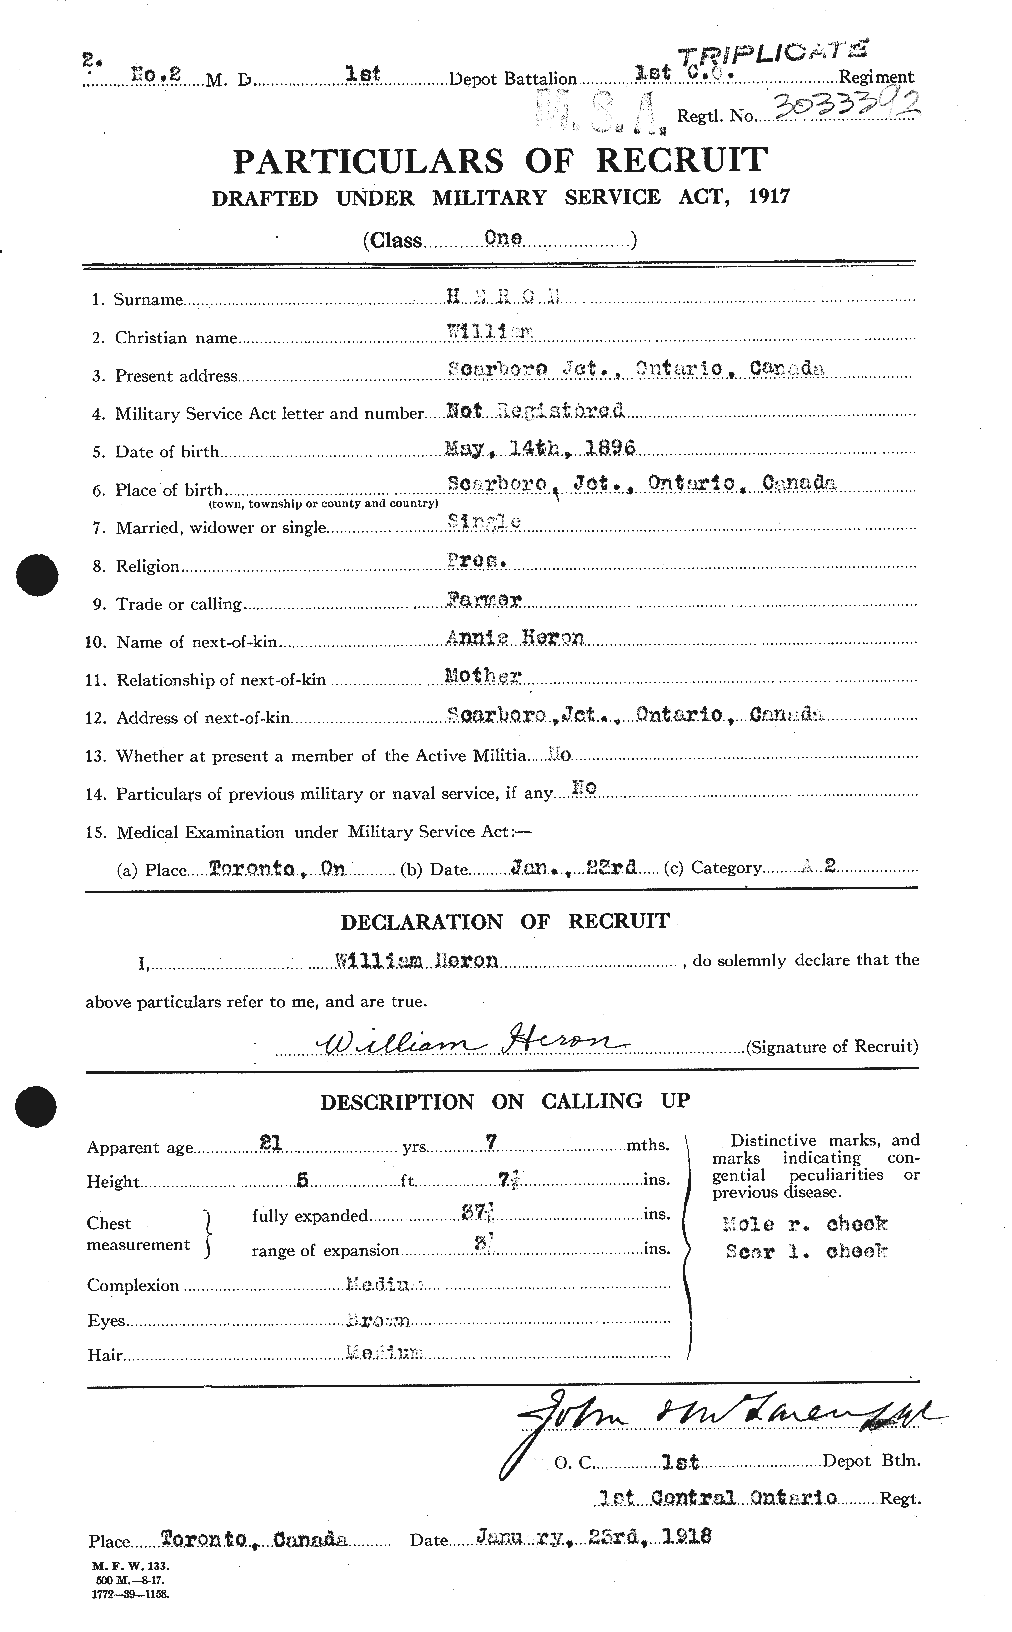 Dossiers du Personnel de la Première Guerre mondiale - CEC 388510a